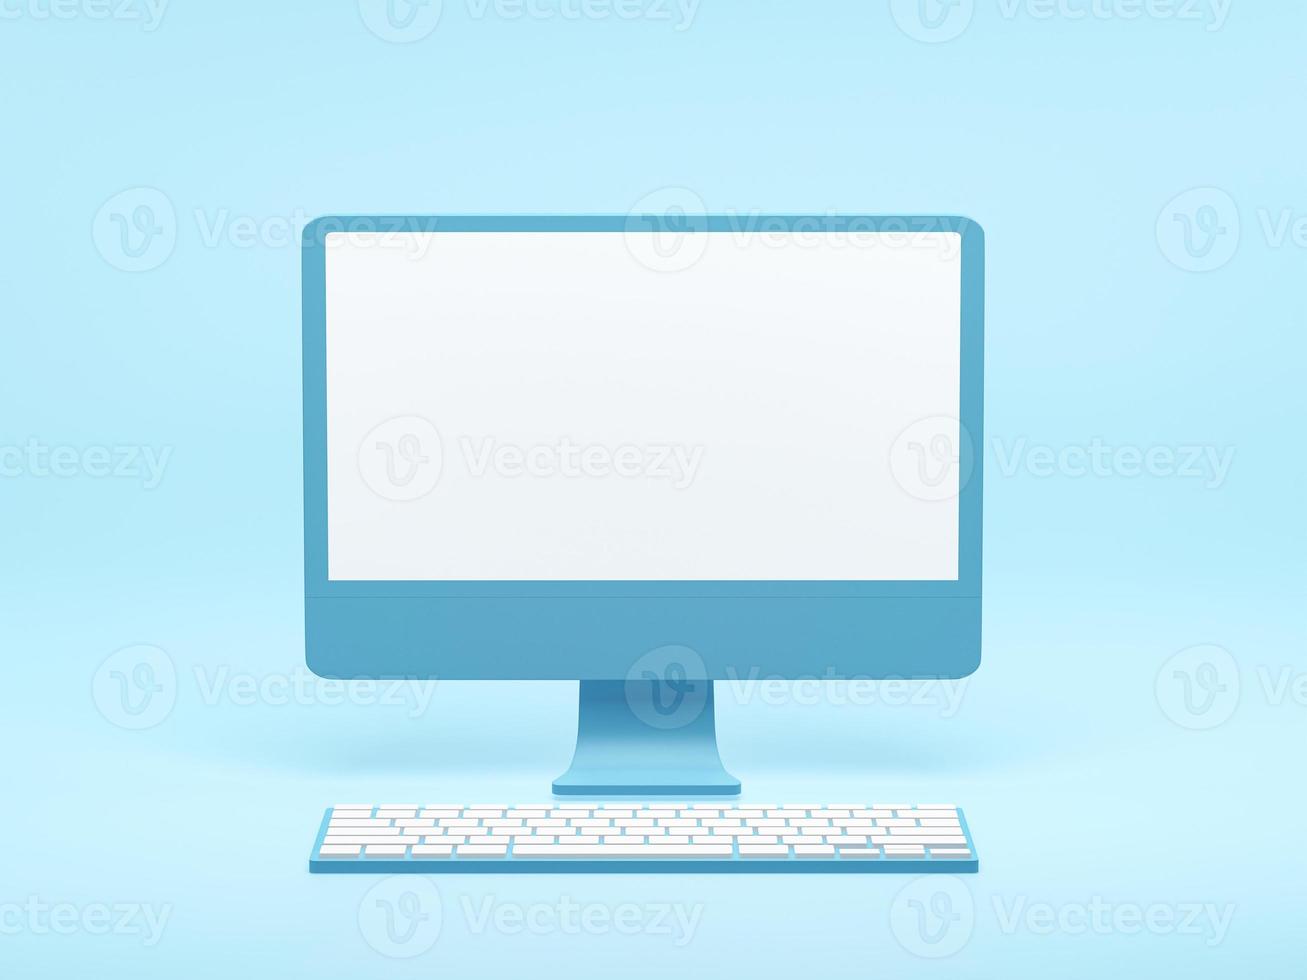 rendu 3d, illustration 3d. pc de bureau avec clavier sur fond bleu. écran d'ordinateur. idées créatives concept de design minimal. photo